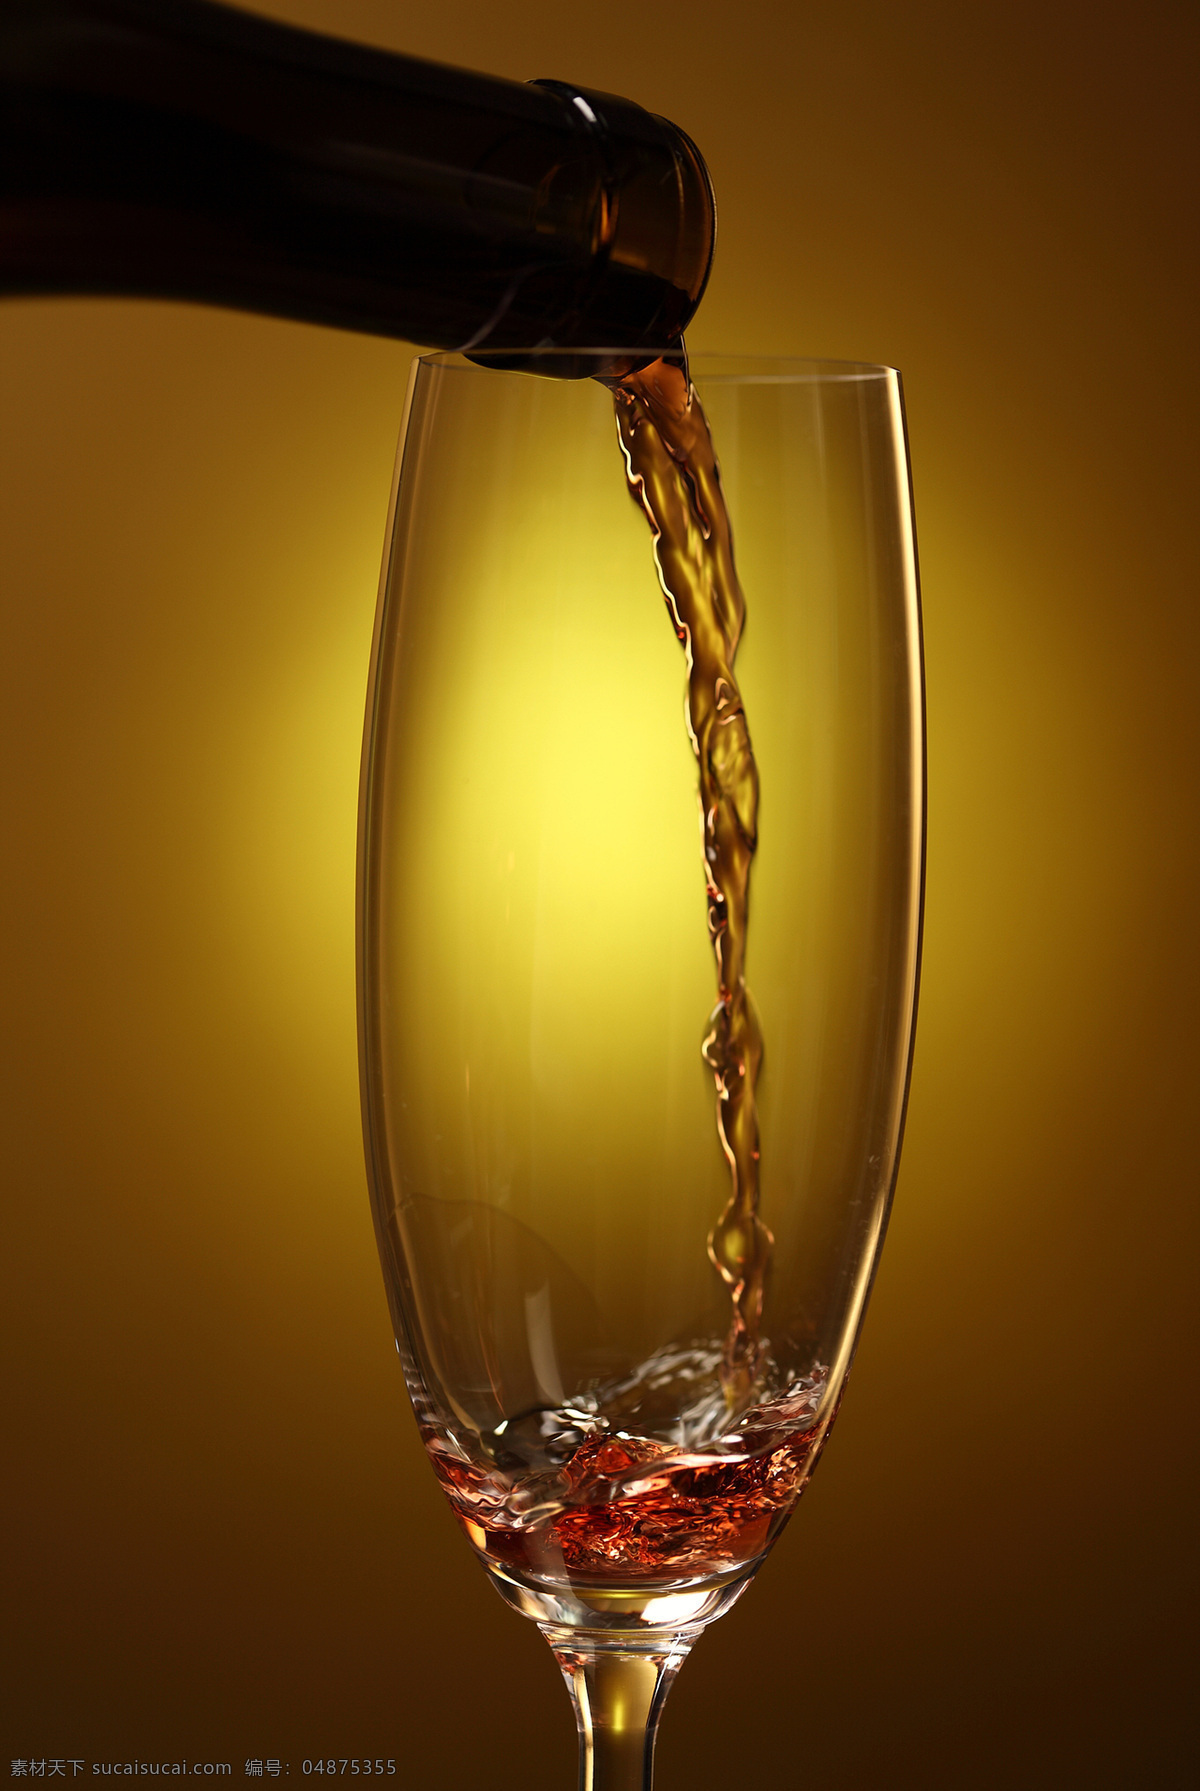 一杯 葡萄酒 红酒 酒杯 酒液 休闲饮品 酒水饮料 餐饮美食 酒类图片